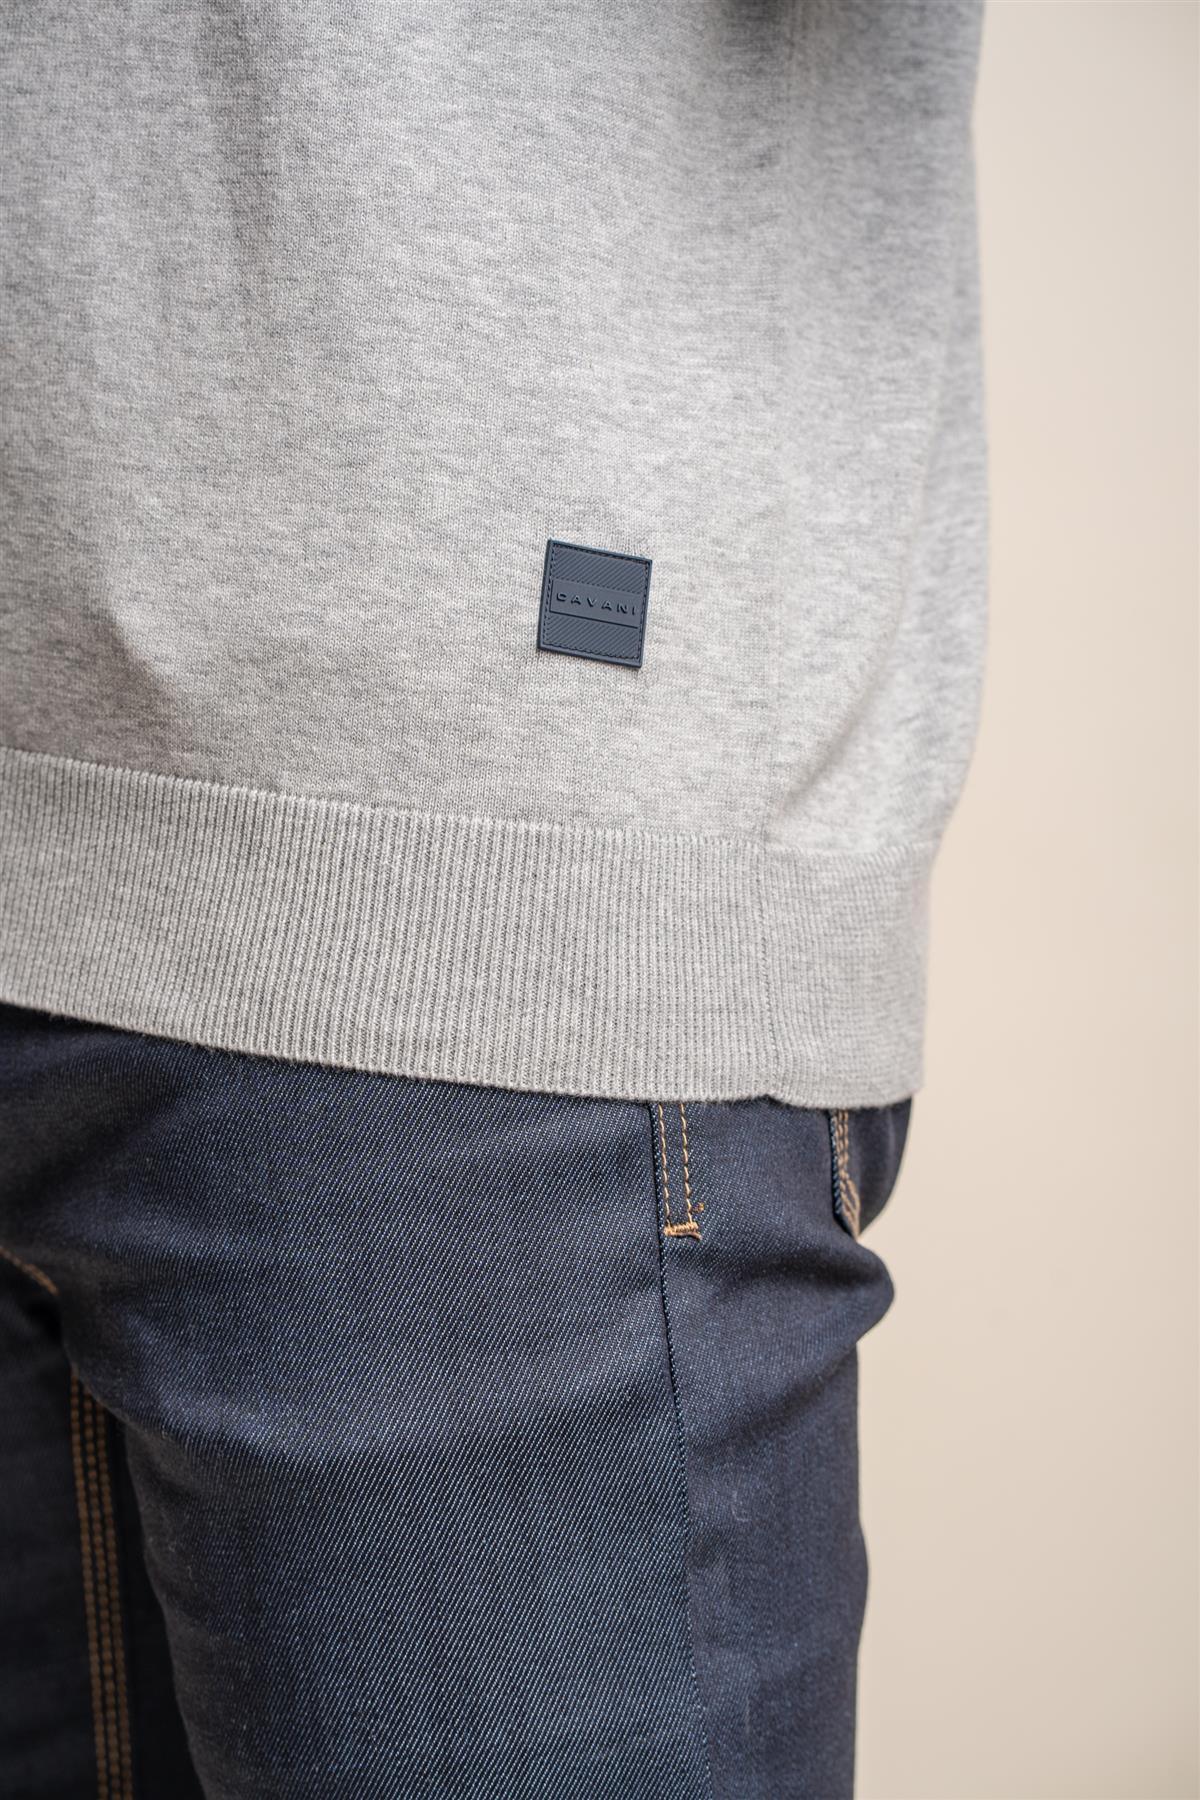 Falcao grey quarter zip jumper detail